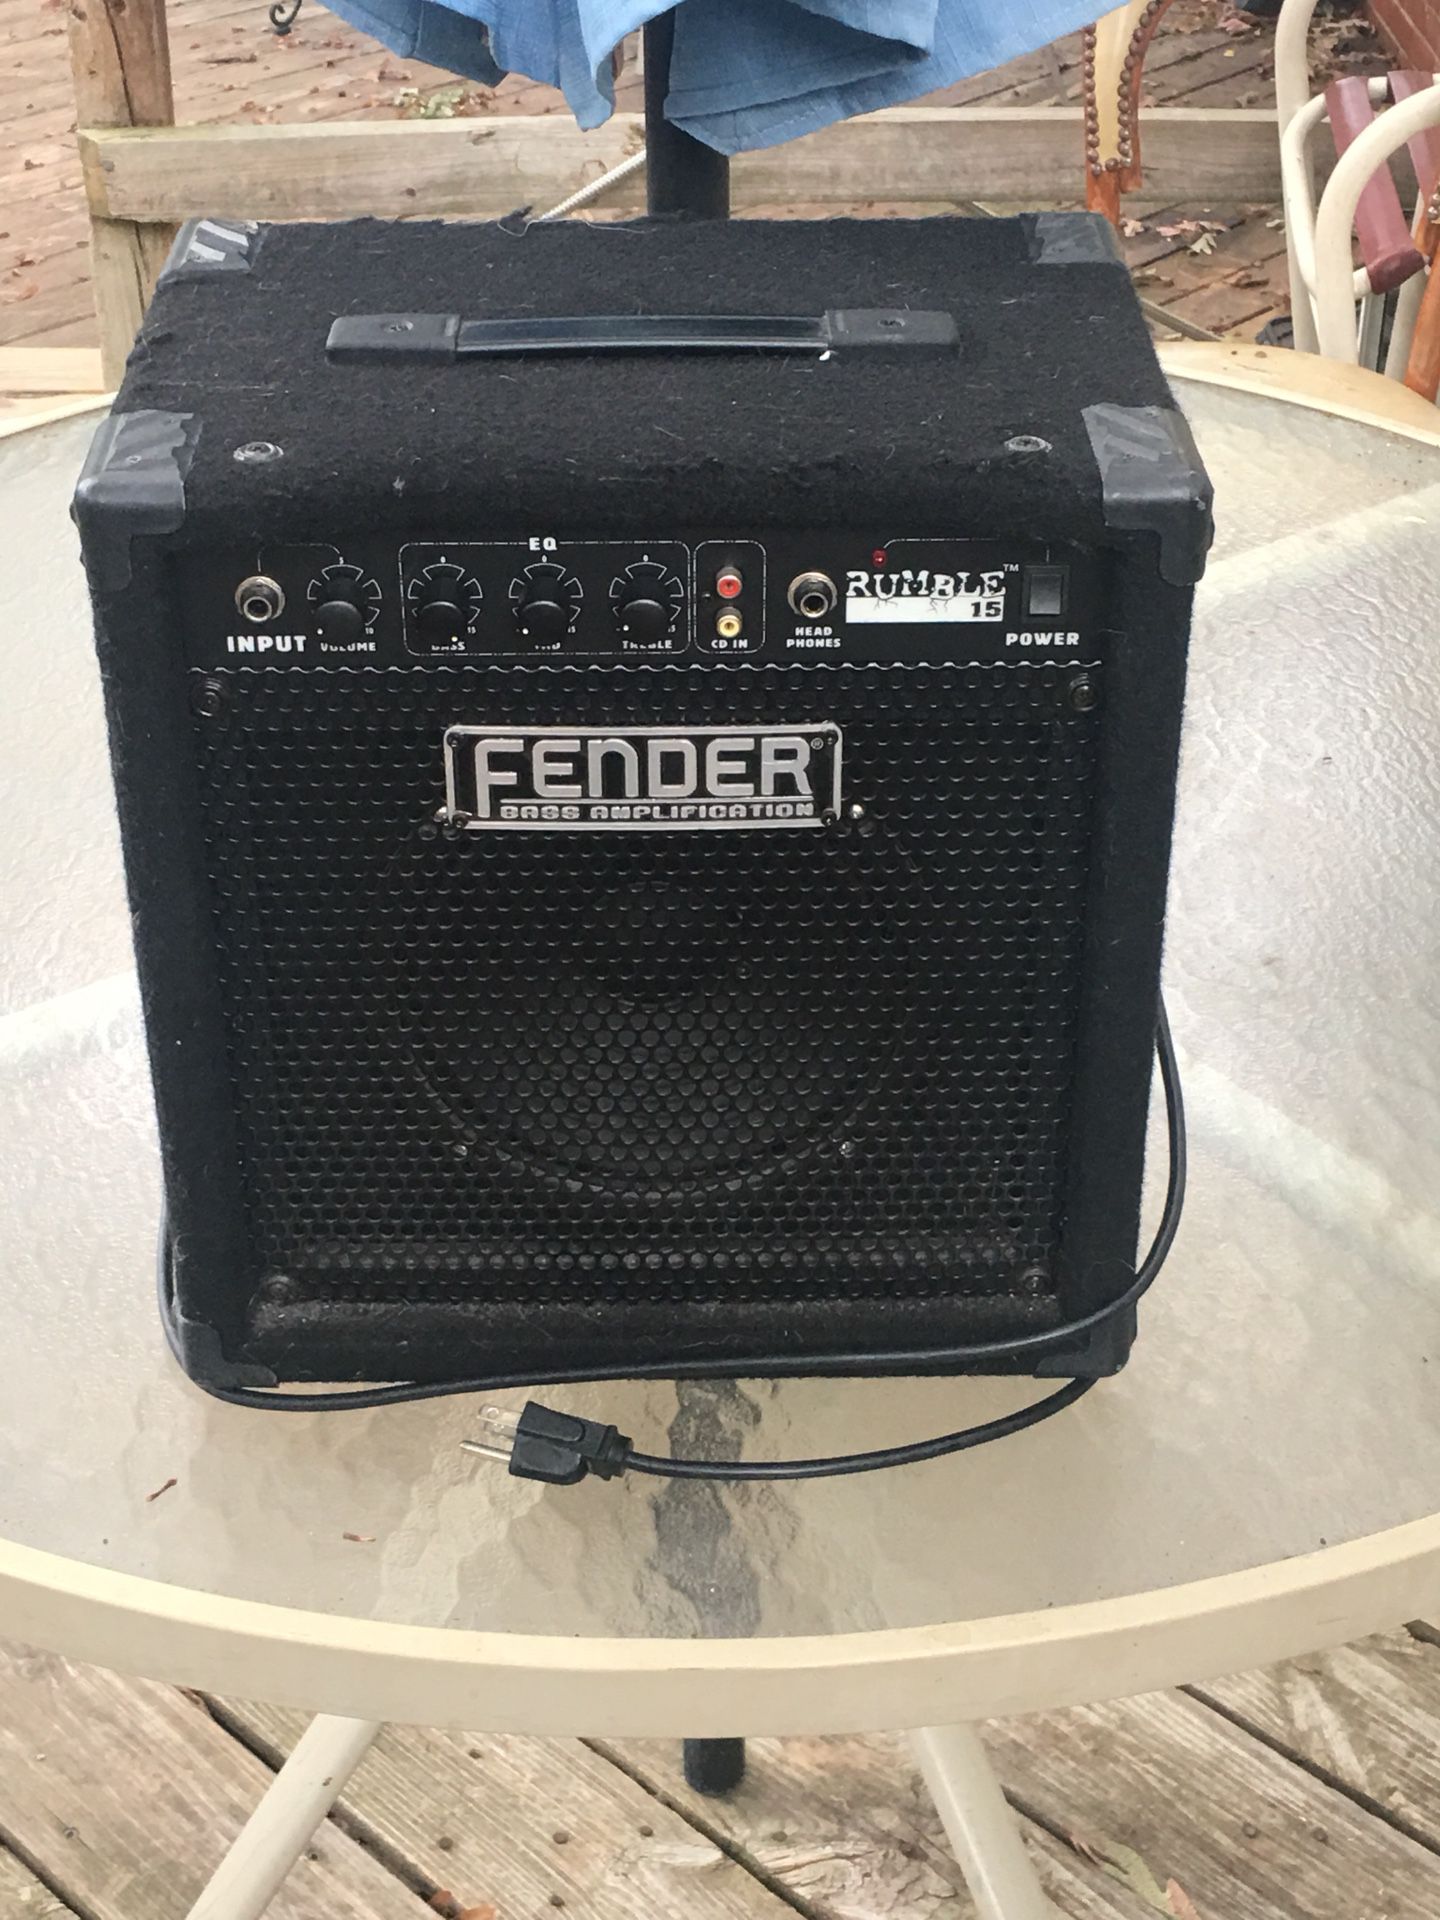 Fender Bass amplification speaker